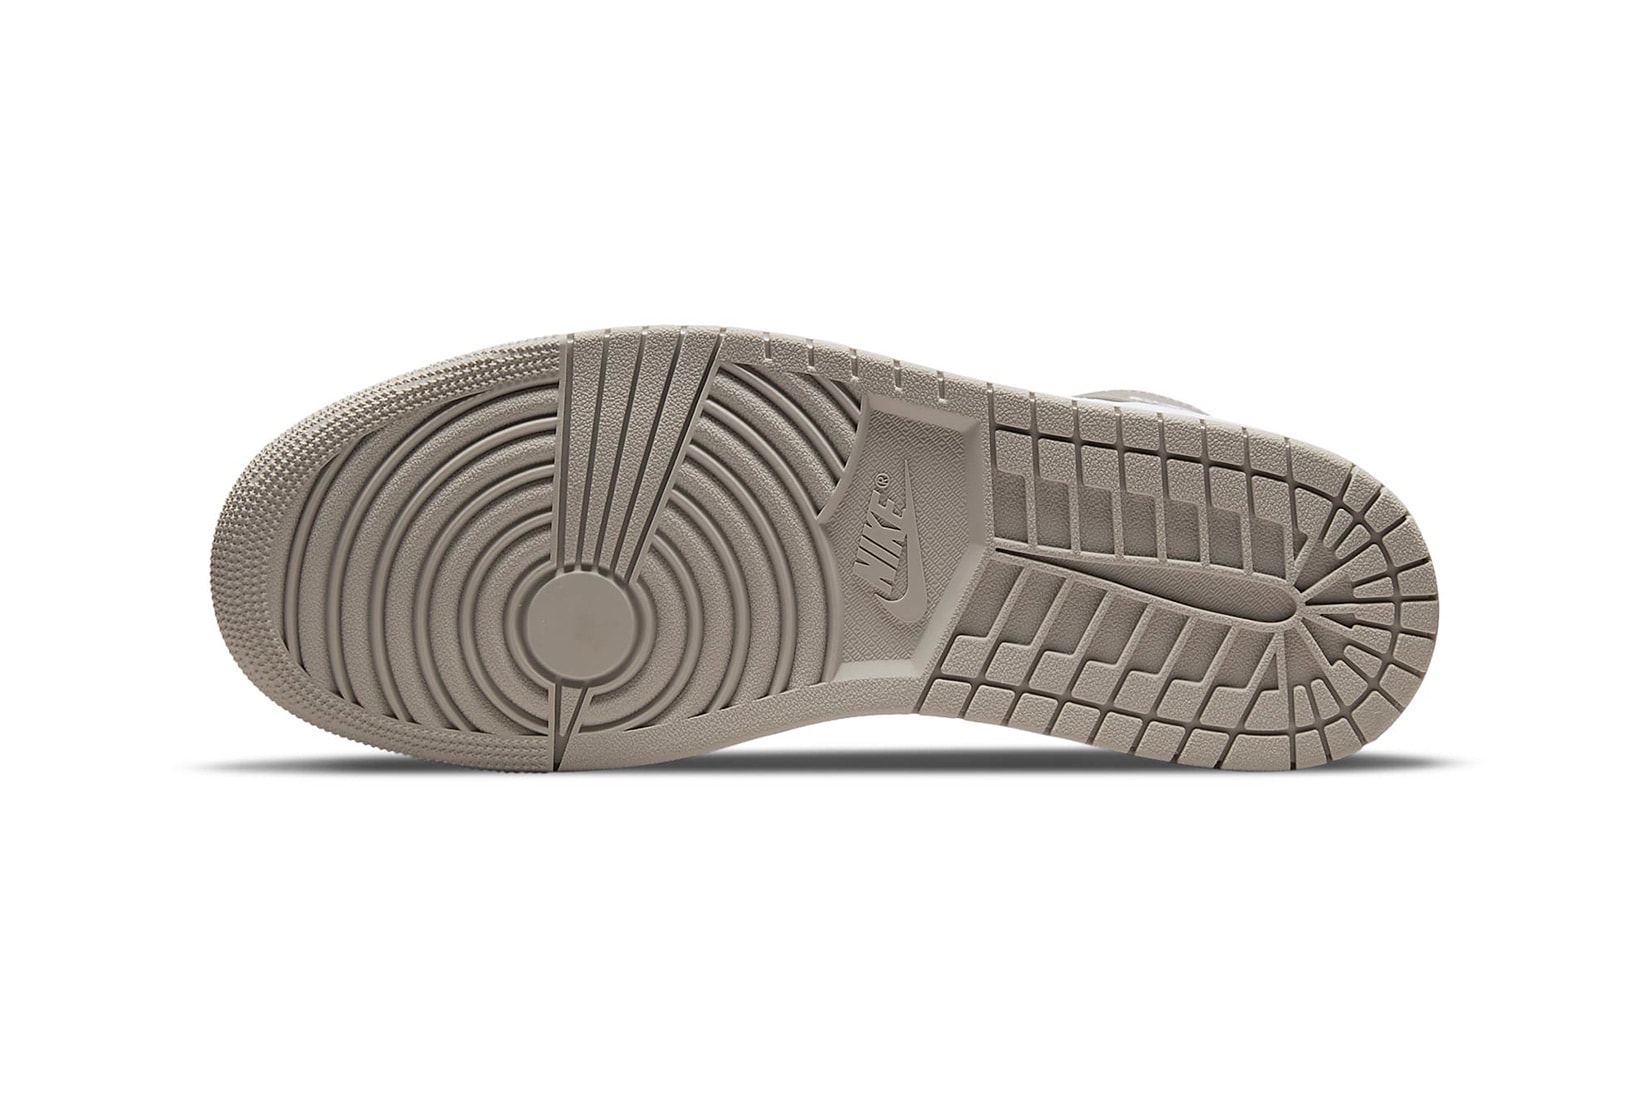 Nike Air Jordan 1 Mid College Grey White Light Bone Sneakers Shoes Kicks Footwear 